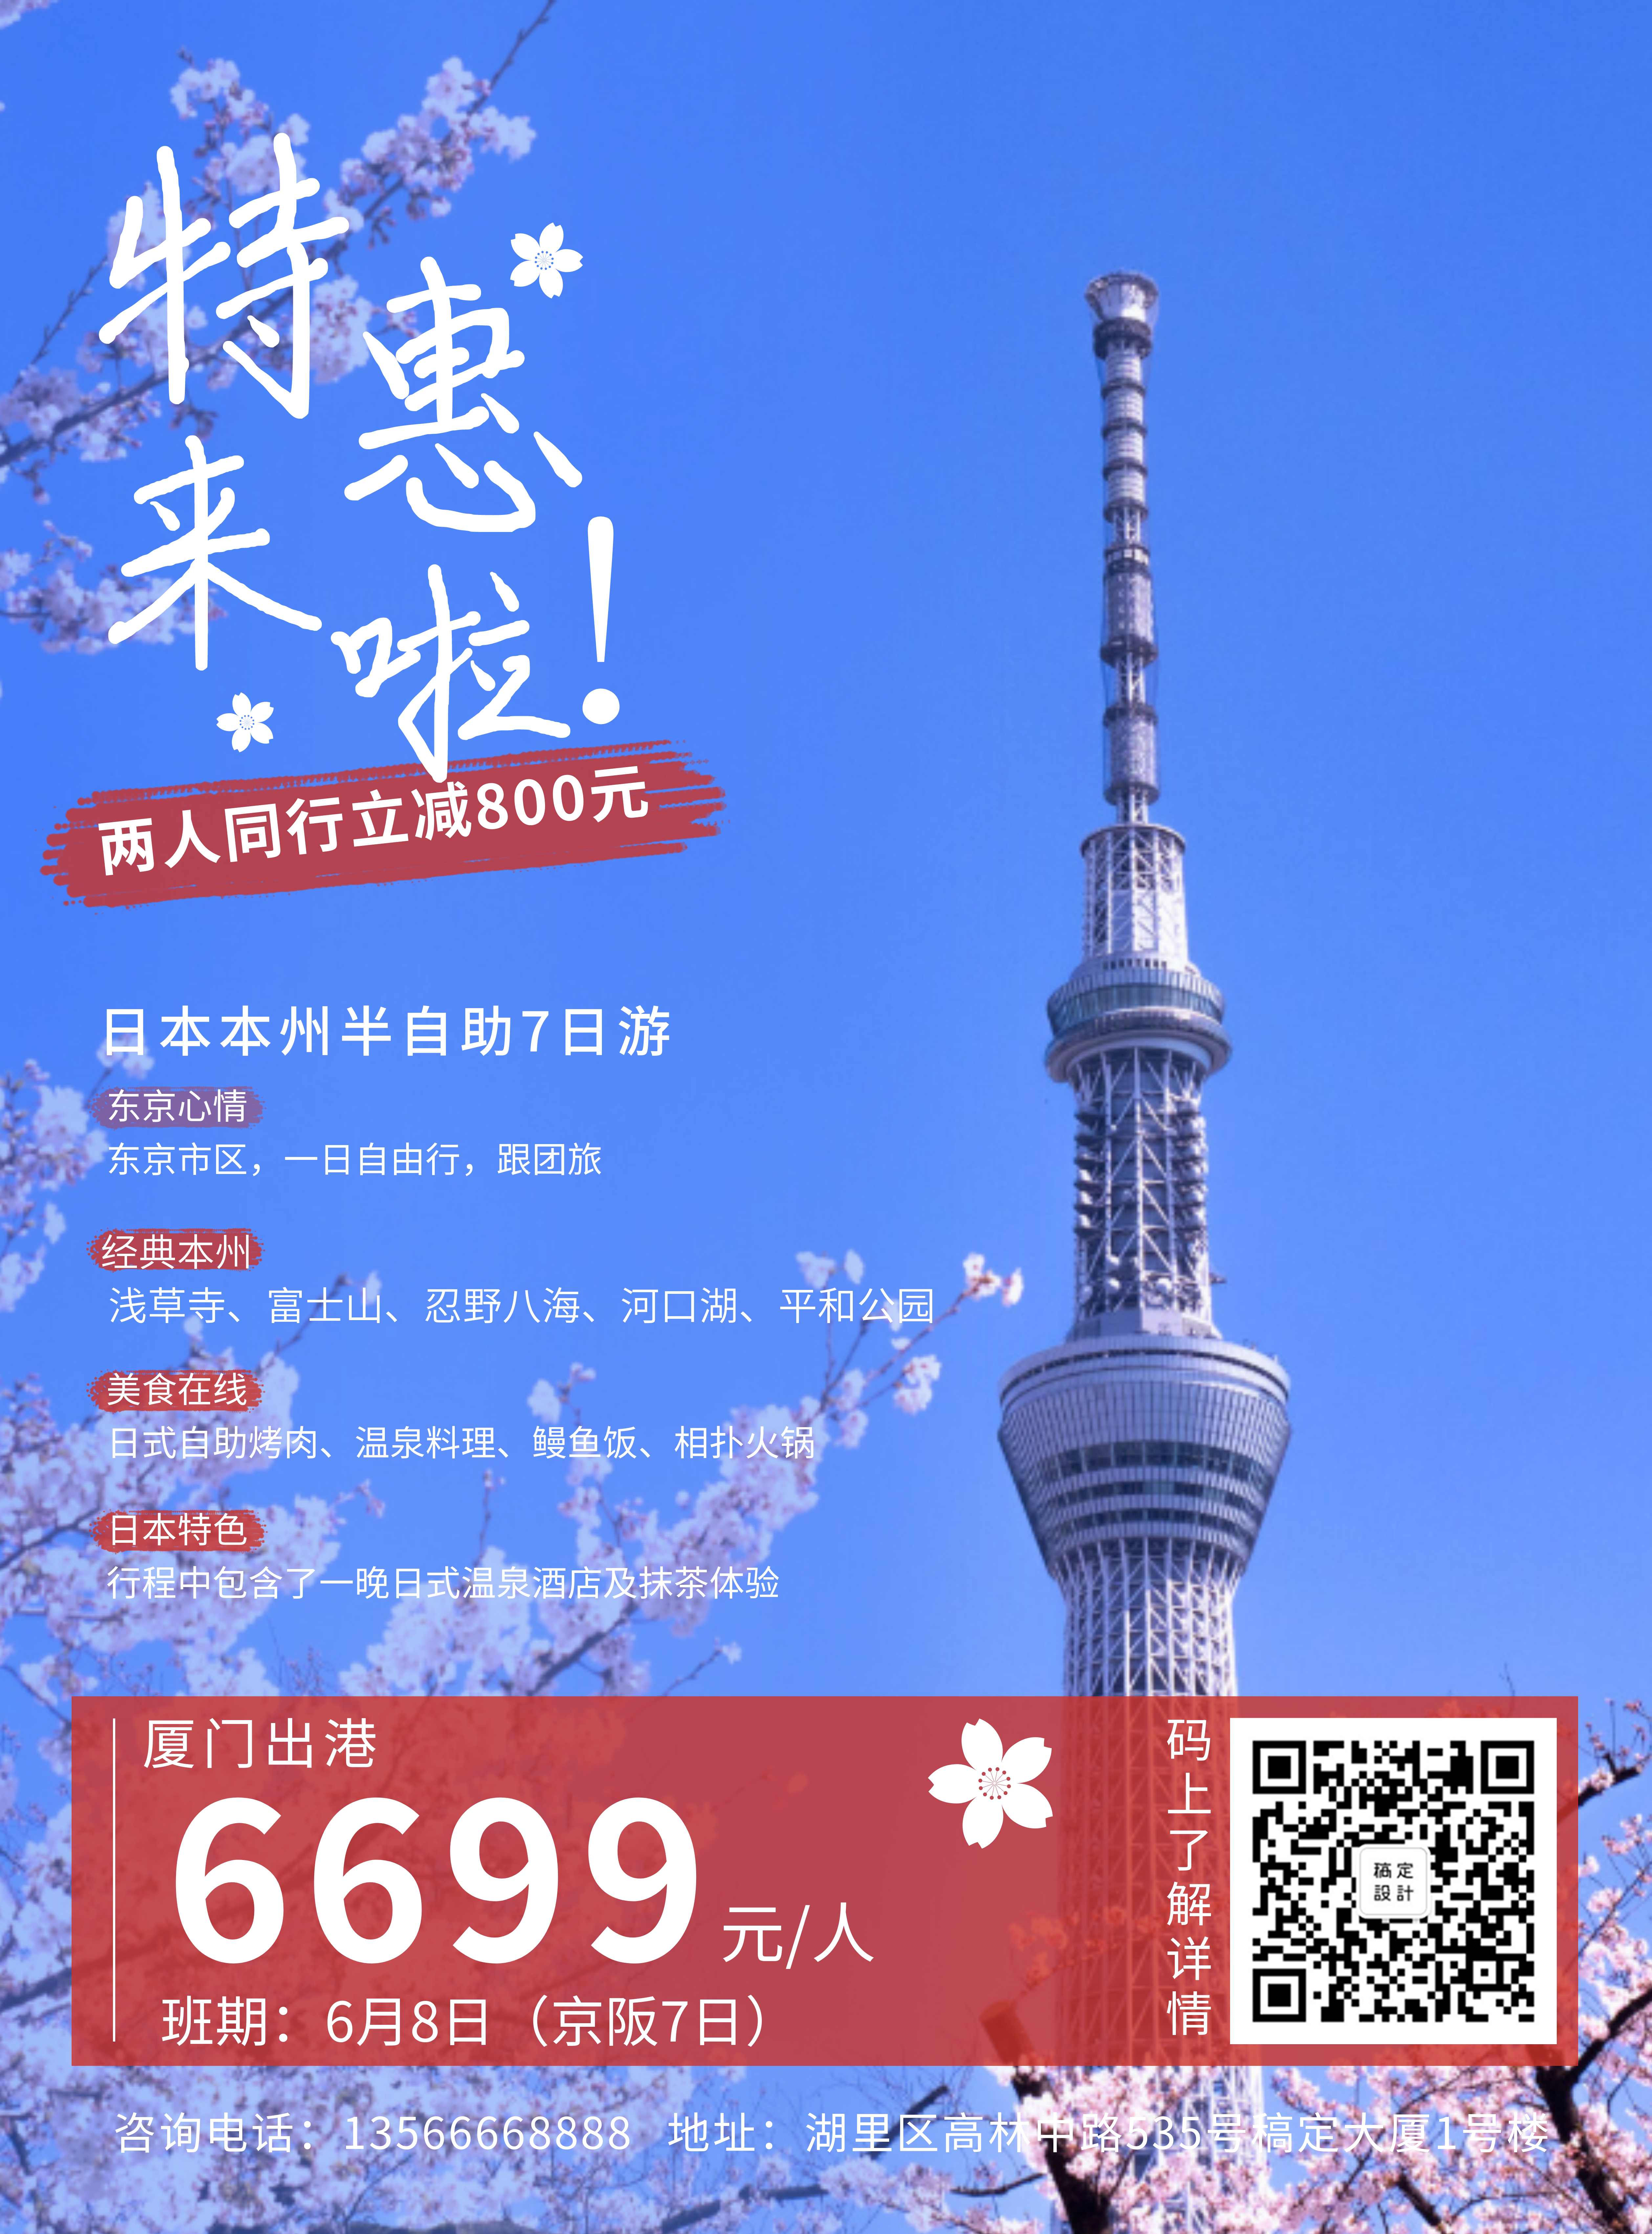 旅游出行日本本州游优惠折扣张贴海报预览效果